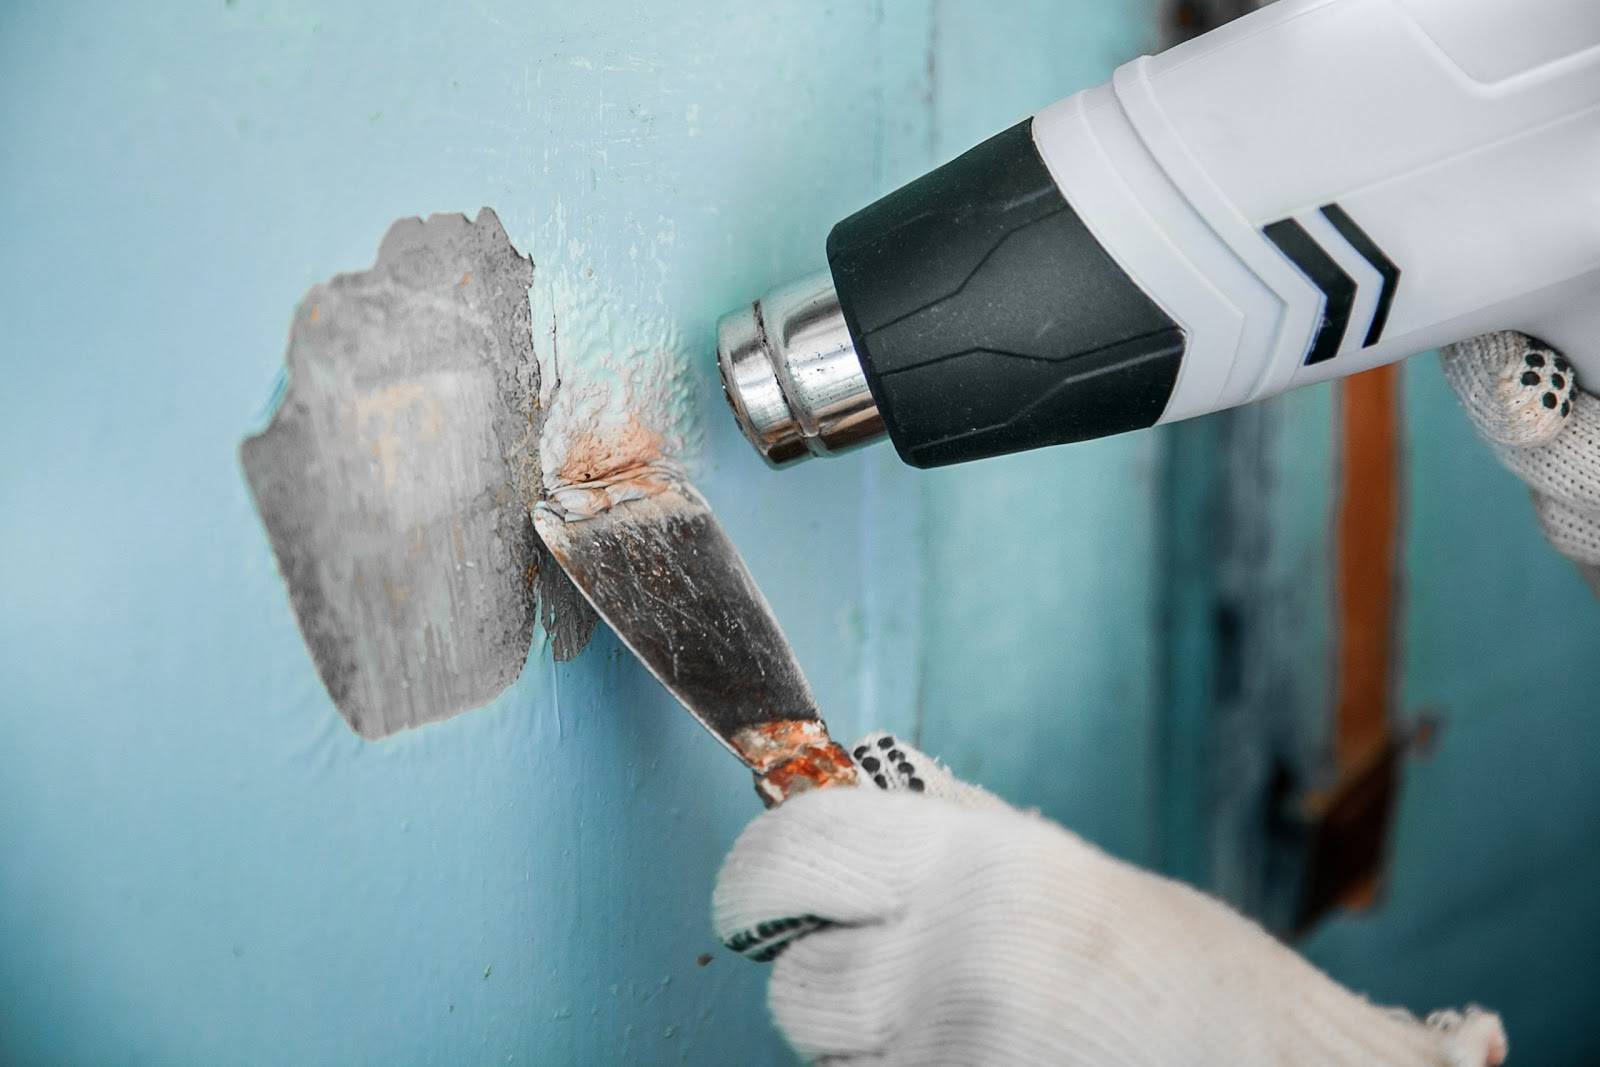 Как удалить краску с деревянных предметов или восстановить их